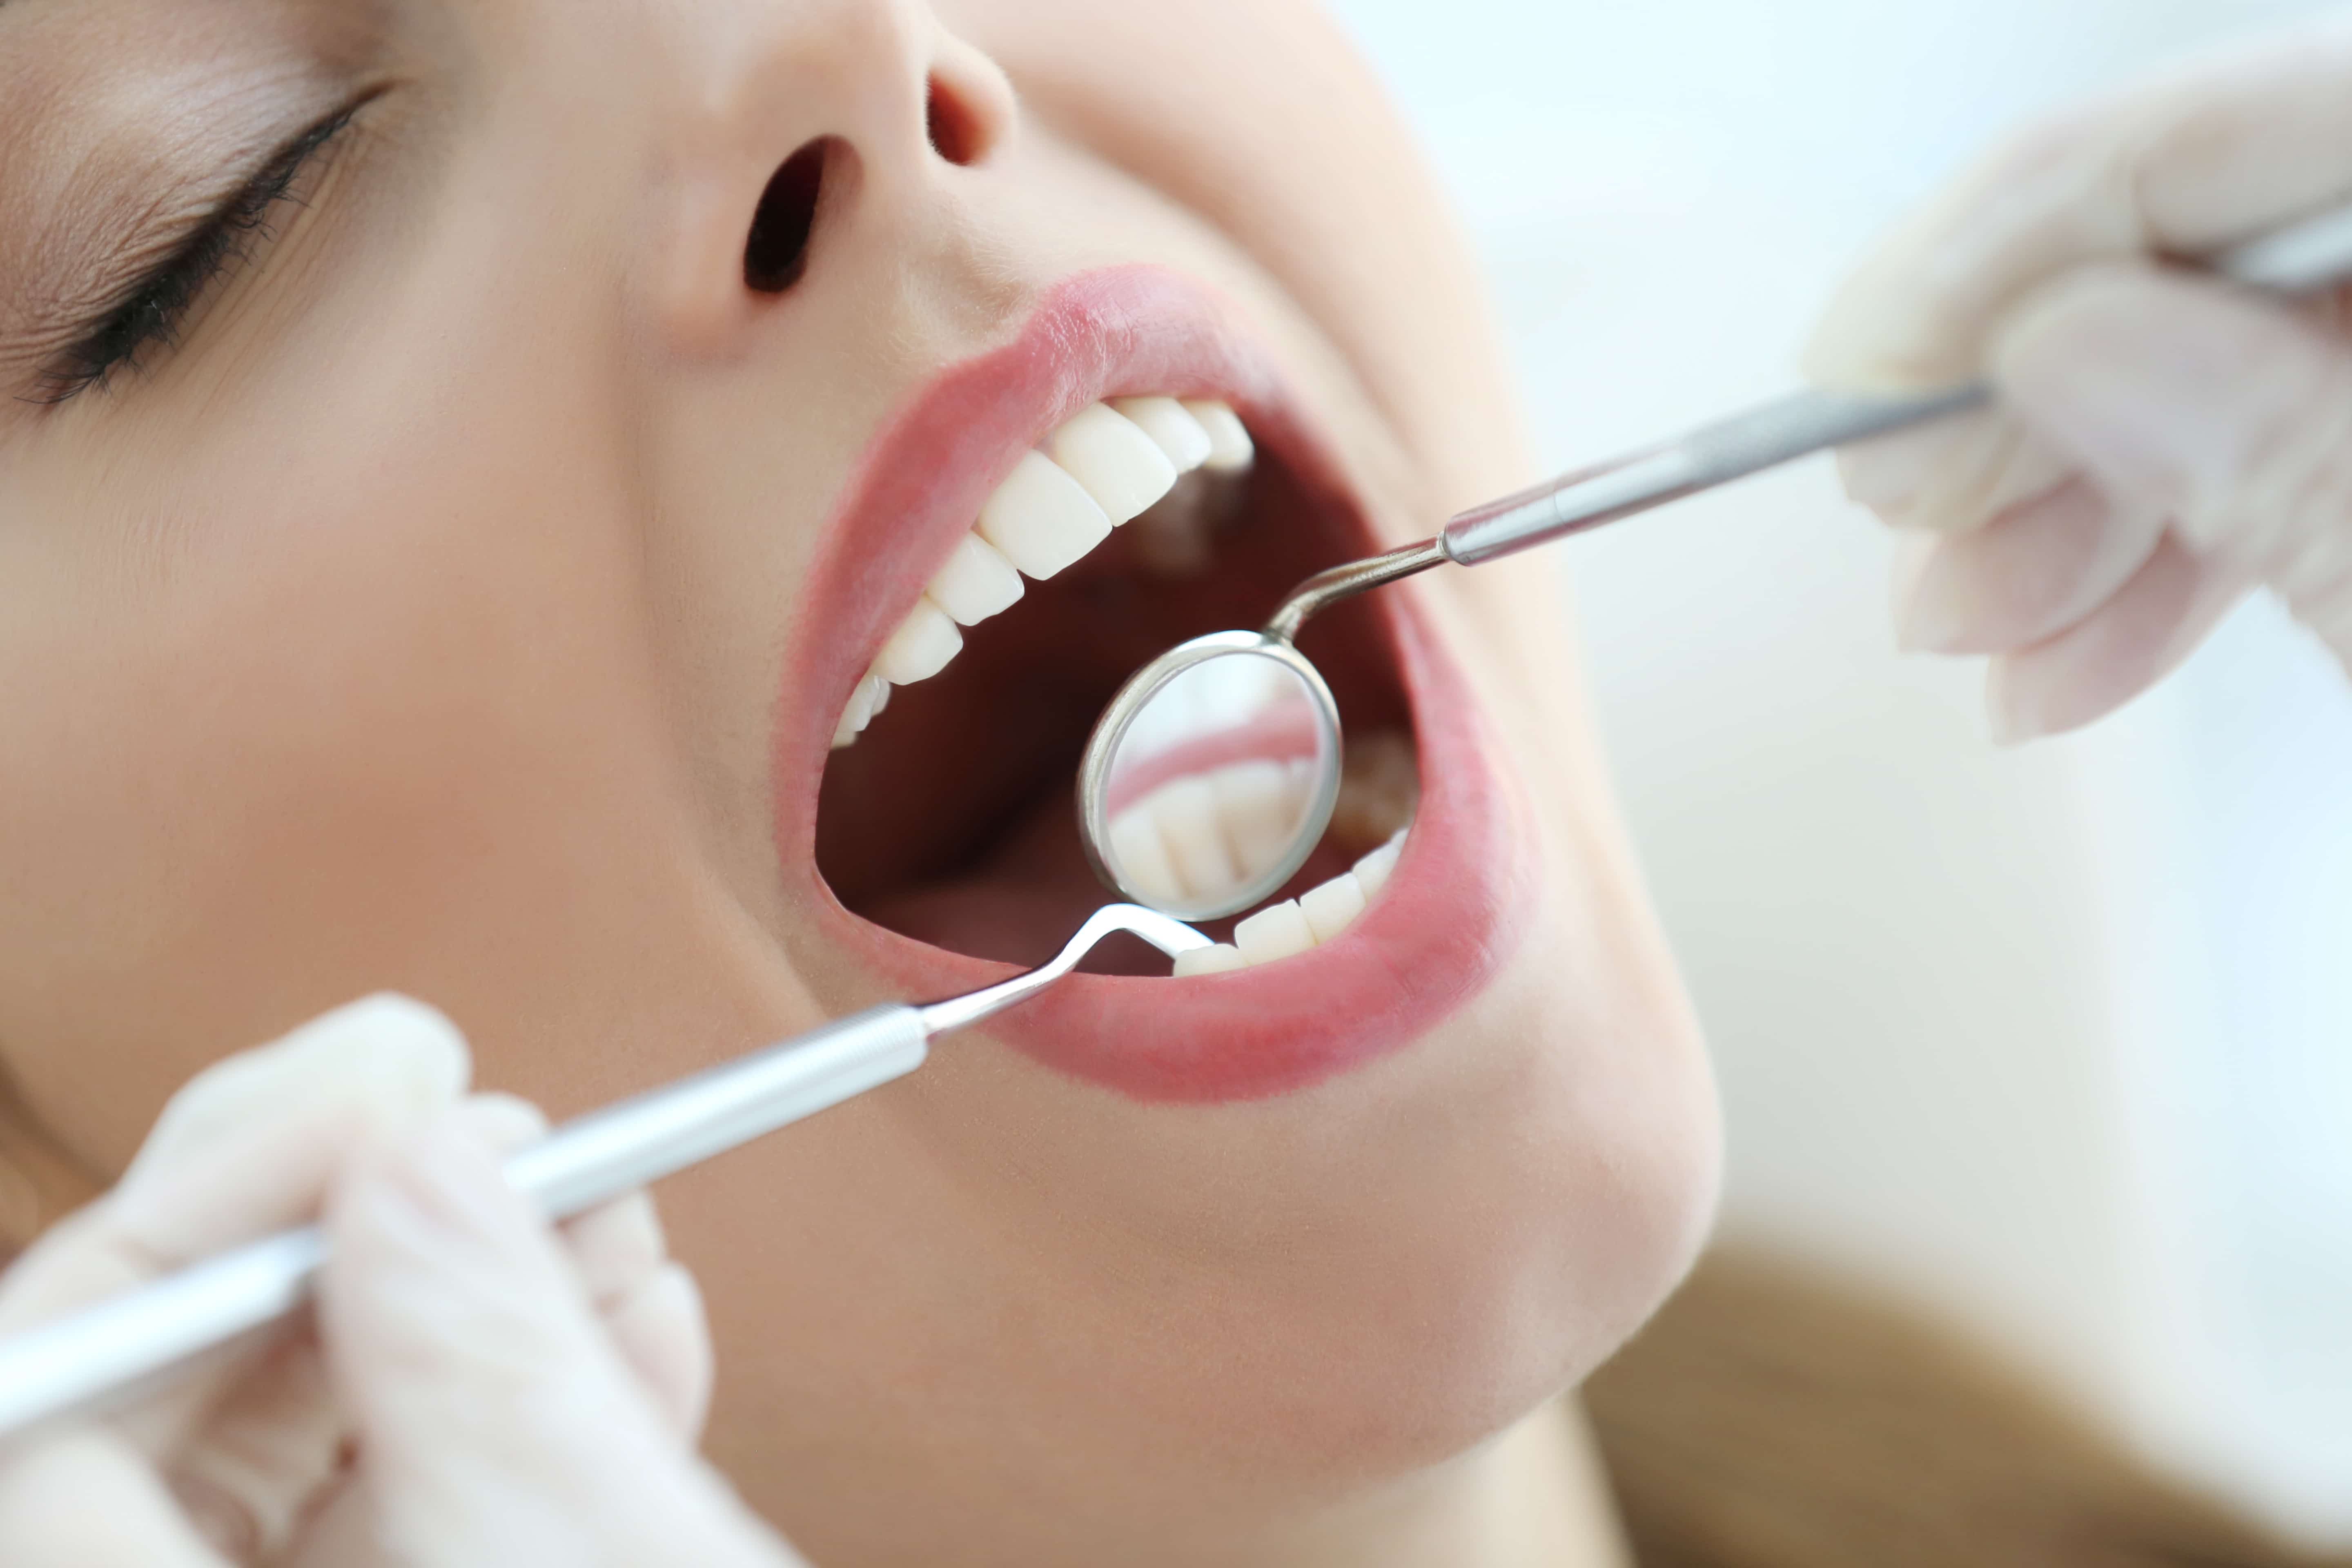 Чистка зуб г. Осмотр стоматолога. Осмотр зубов у стоматолога. Профессиональная гигиена полости рта. Осмотр полости рта у стоматолога.